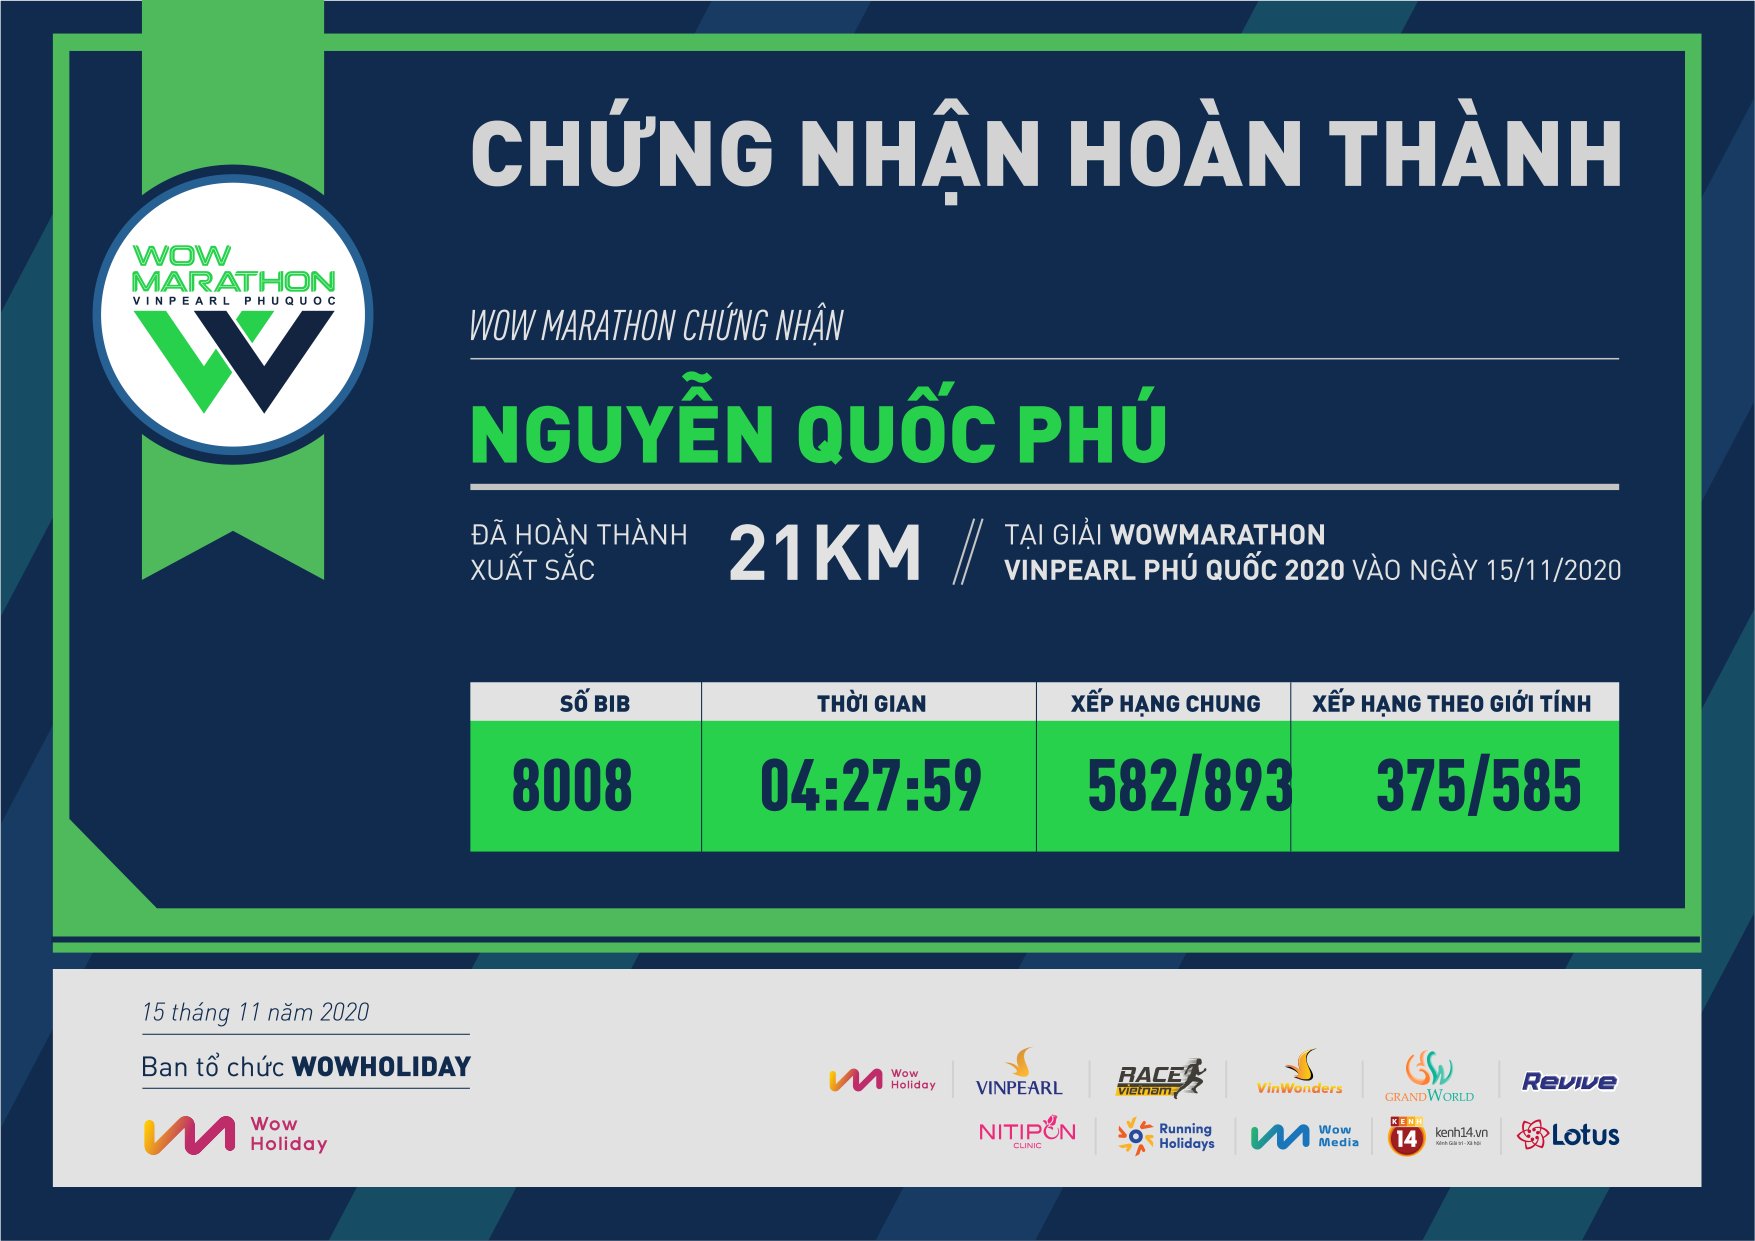 8008 - Nguyễn Quốc Phú